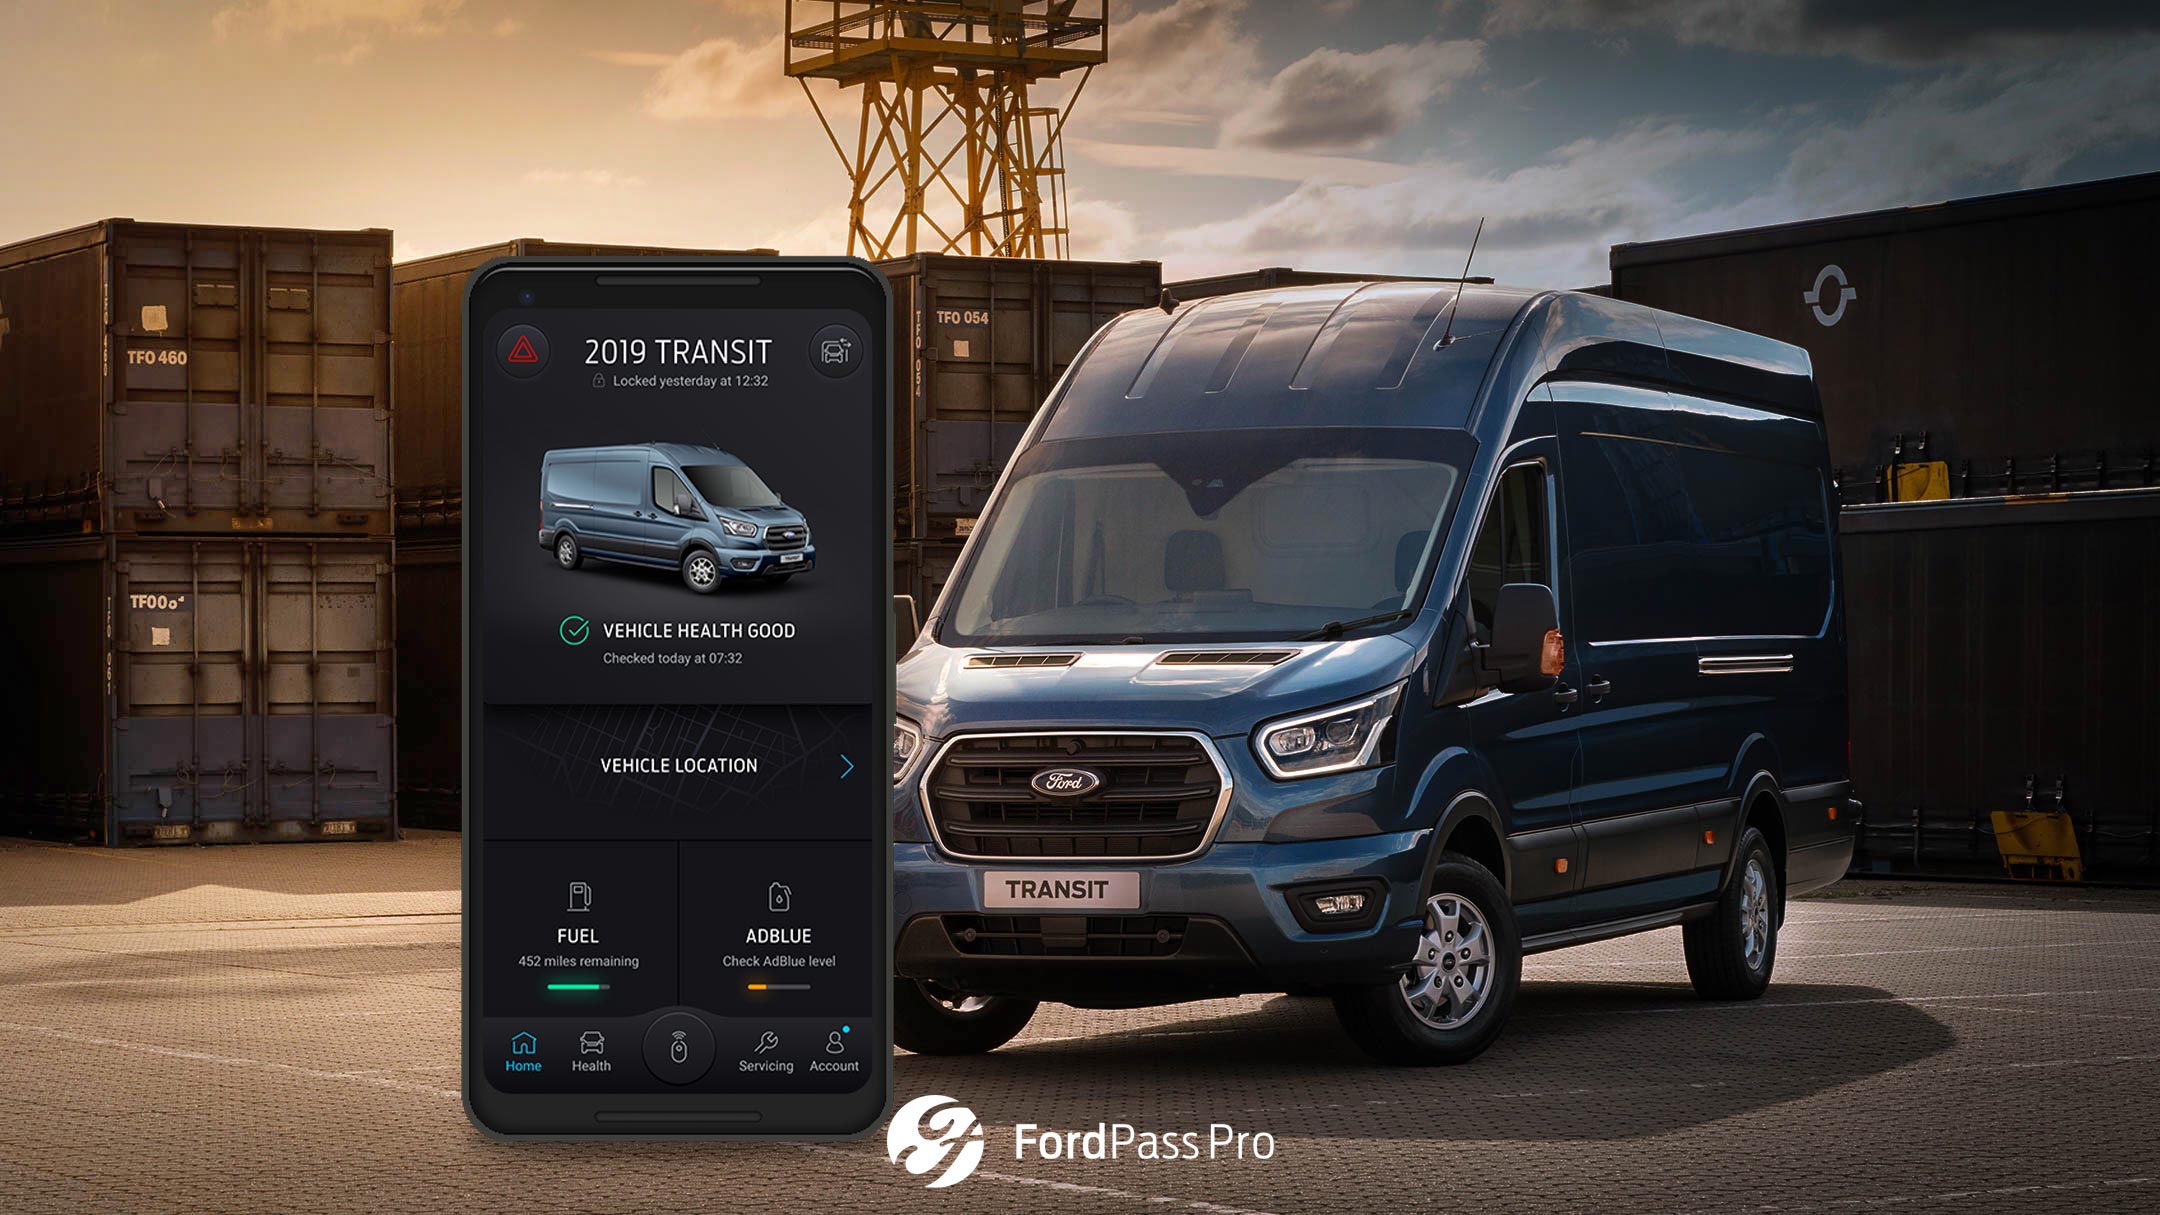 FordPass Pro